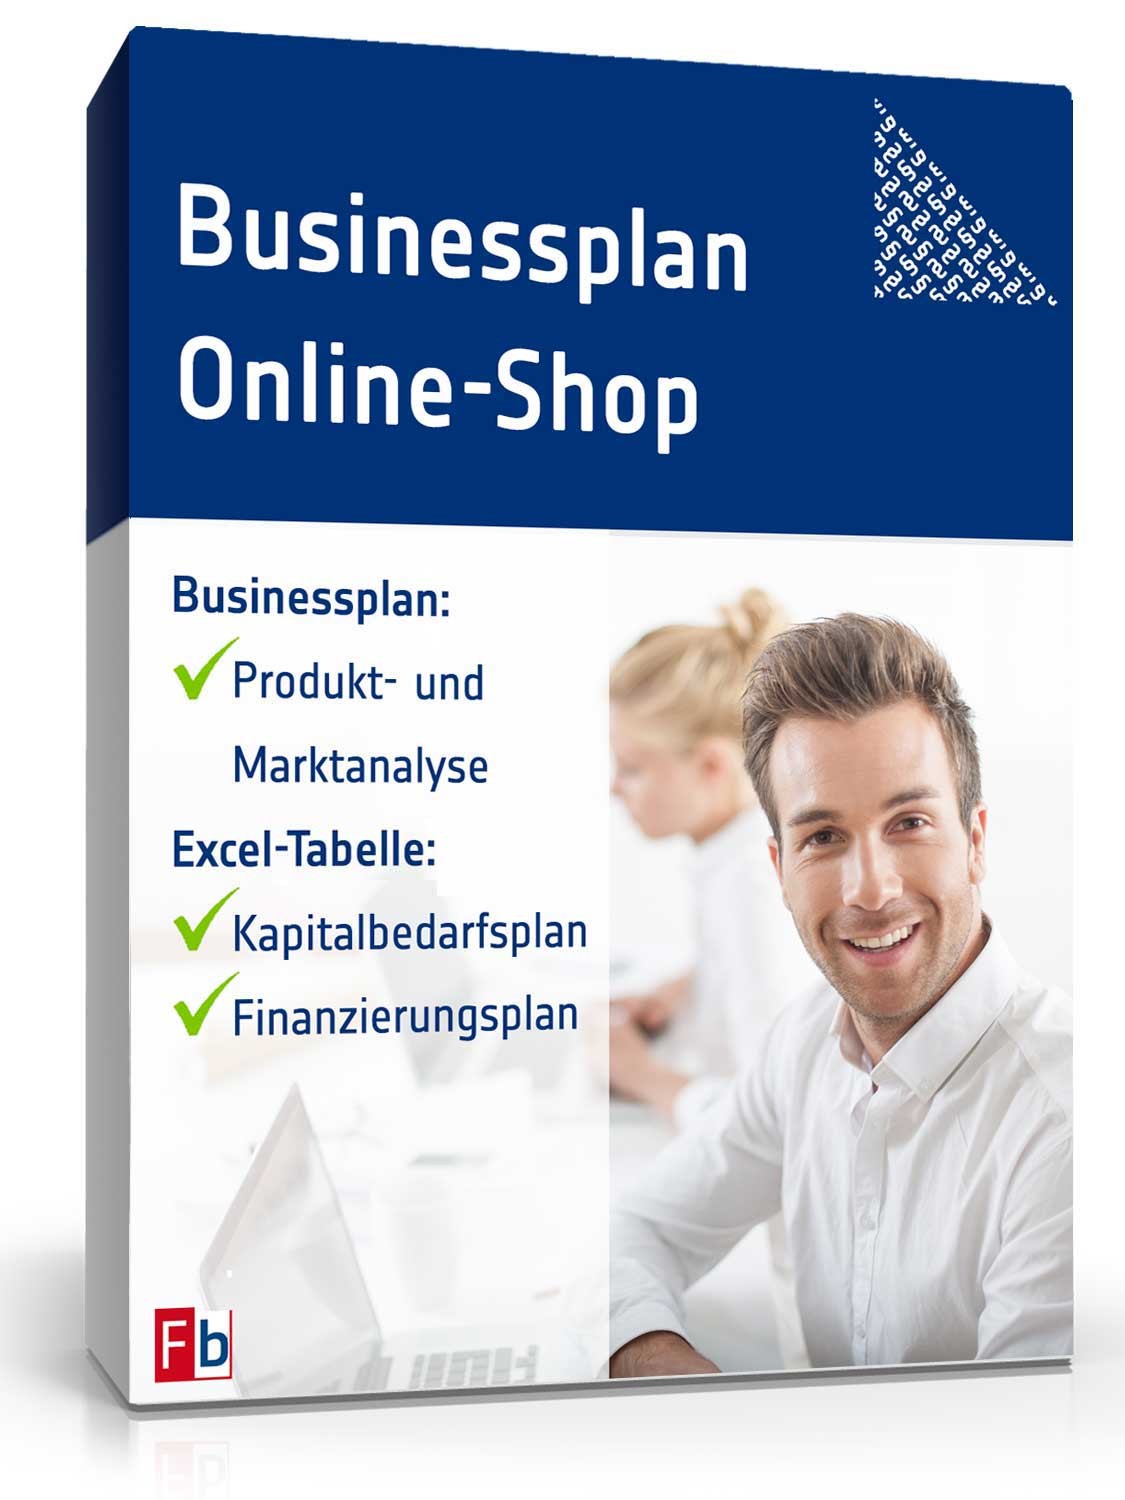 Hauptbild des Produkts: Businessplan Online-Shop